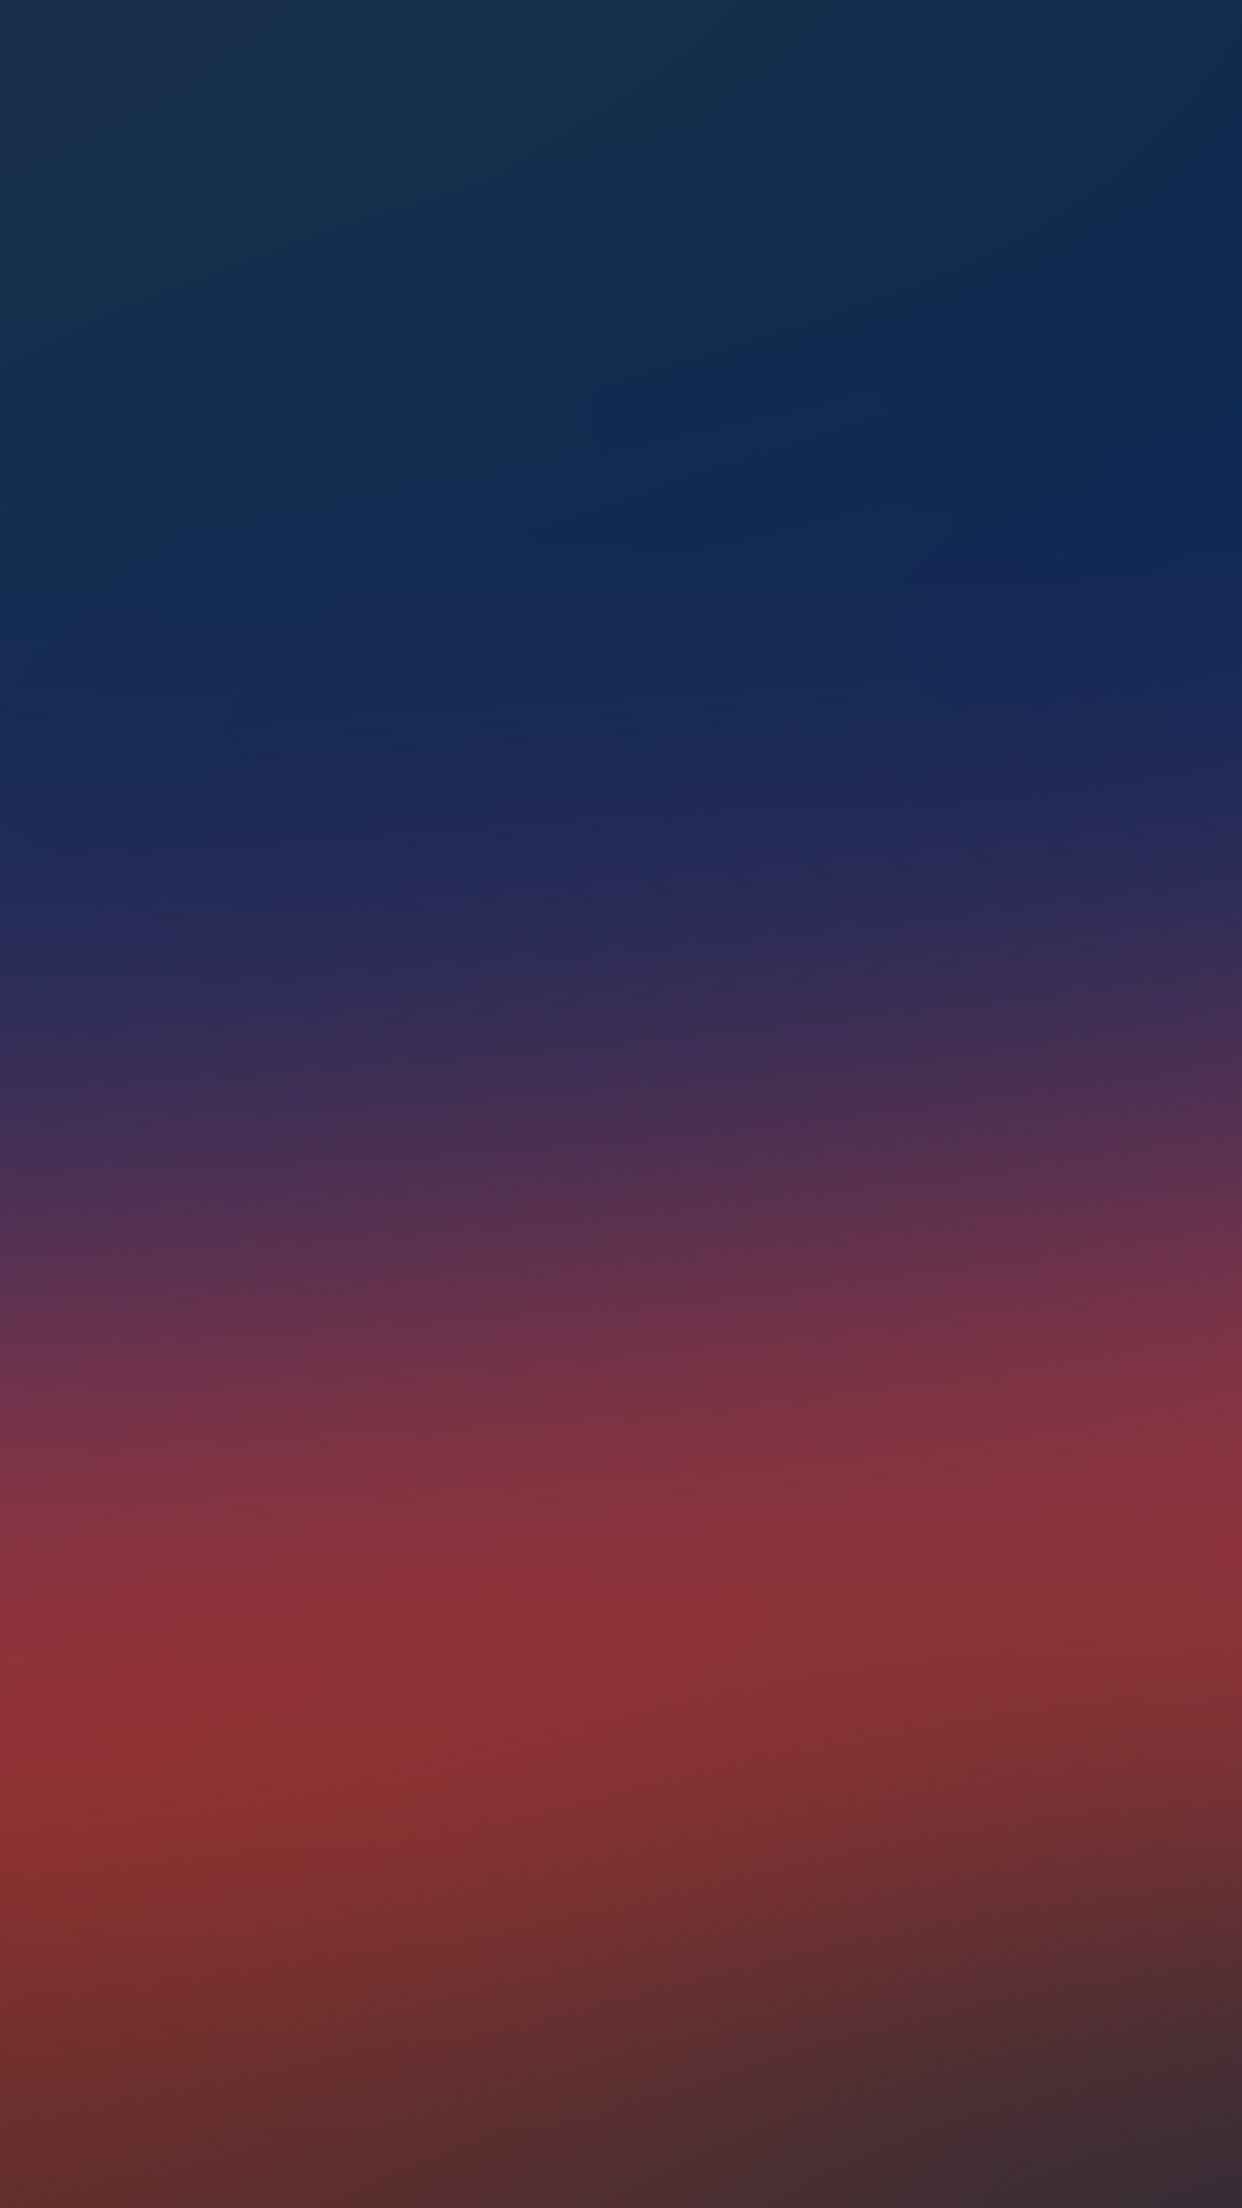 iPhone X wallpaper. blue red blur gradation